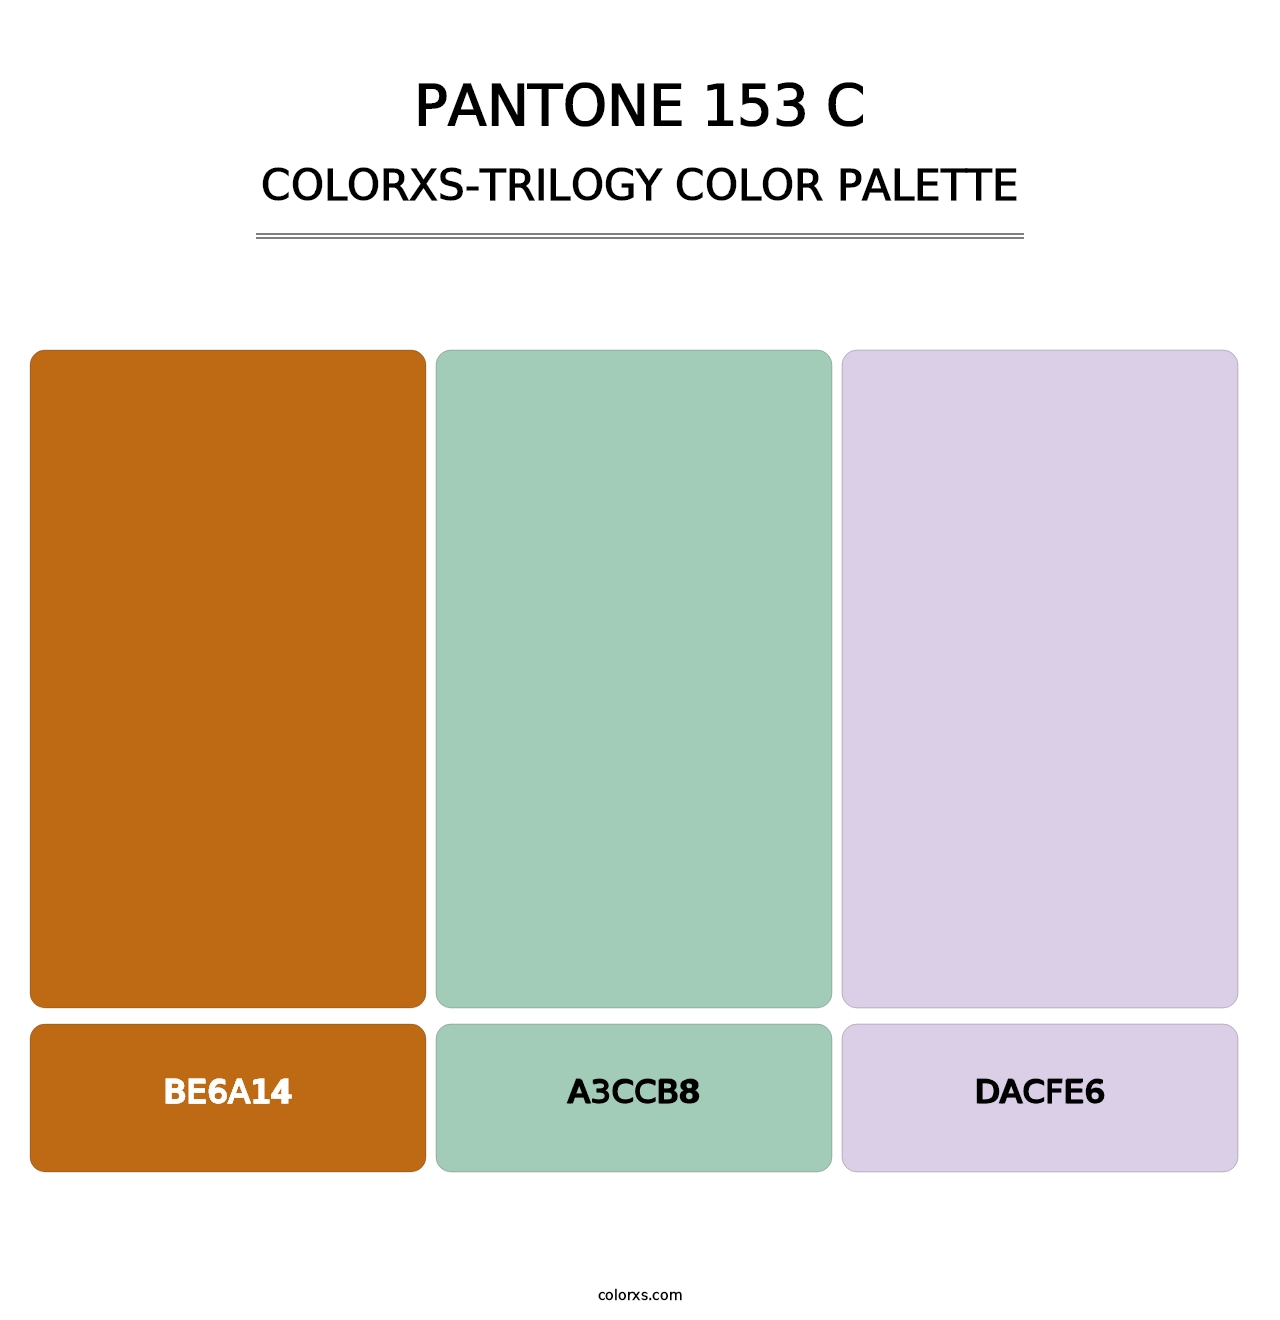 PANTONE 153 C - Colorxs Trilogy Palette